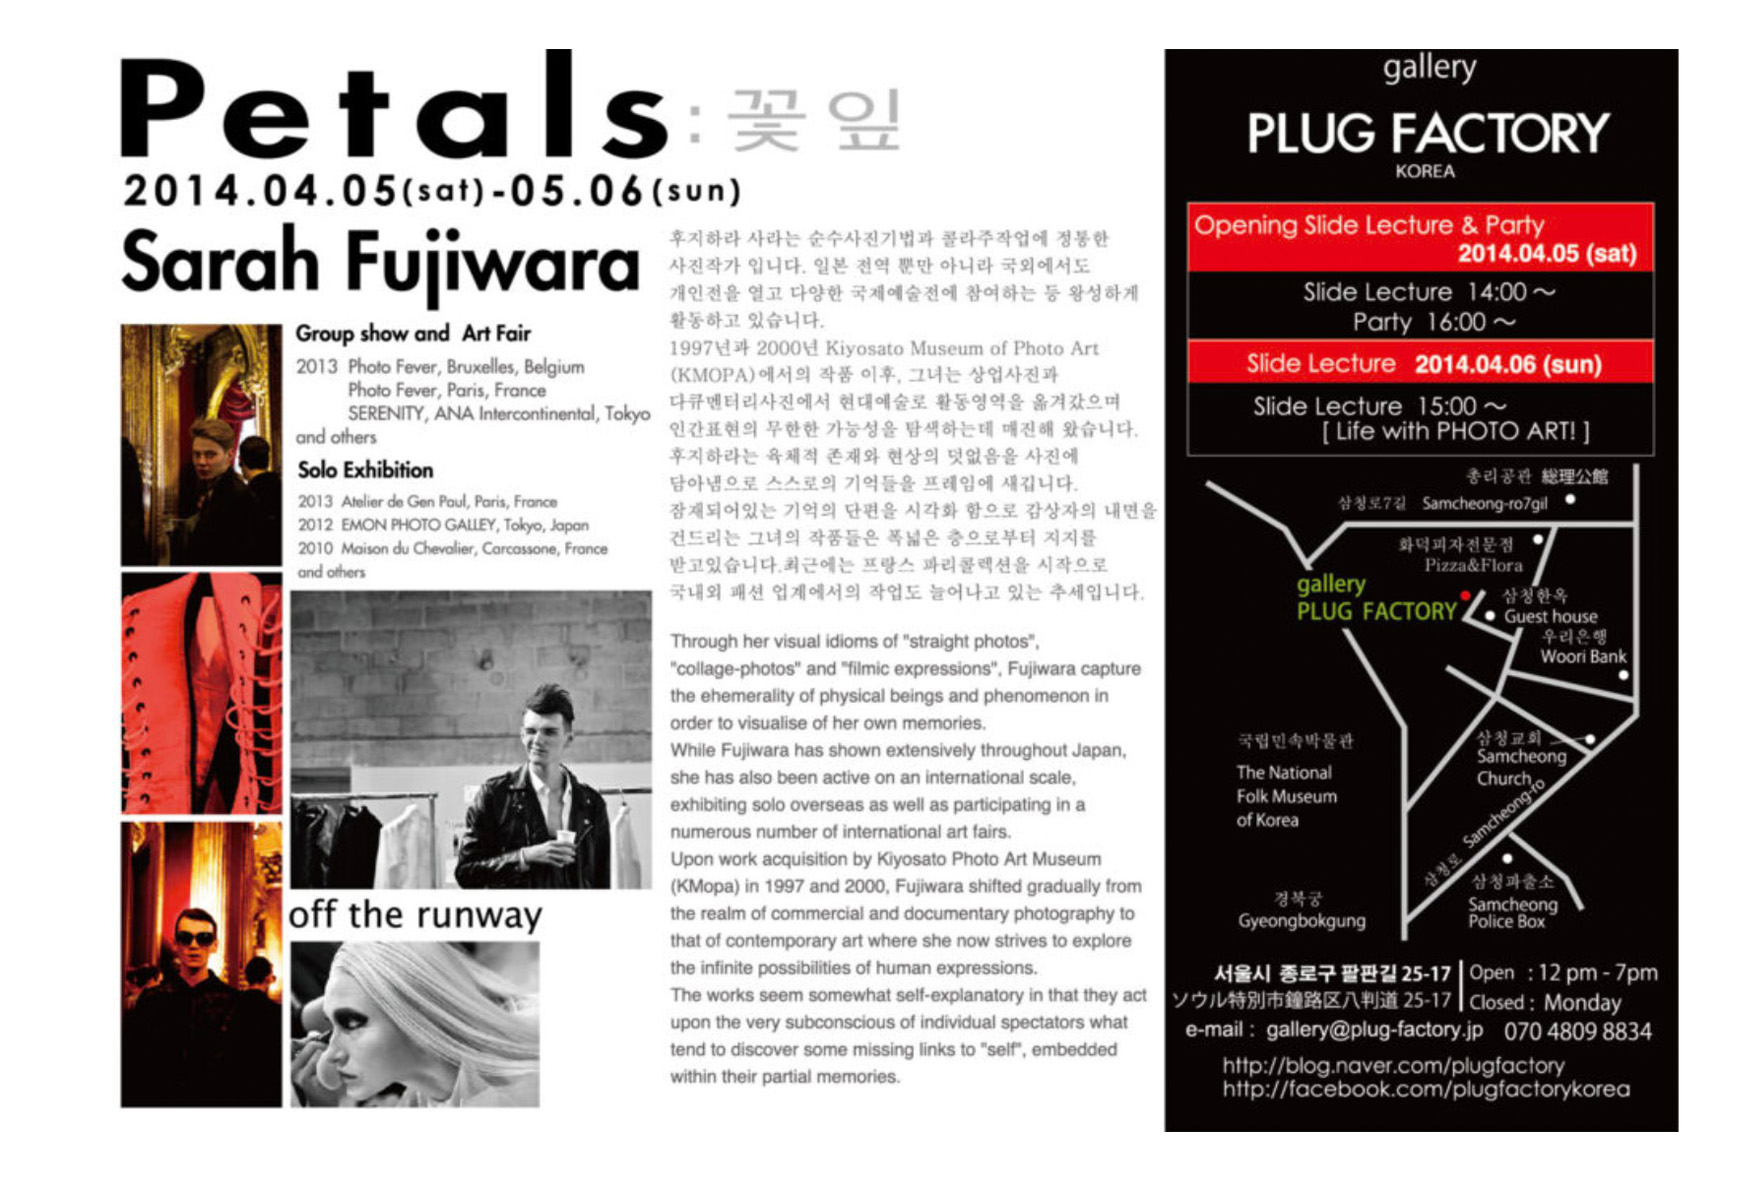 Petals, Gallery PLUG FACTORY, Seoul Korea, April 5-May 6, 2014, solo show